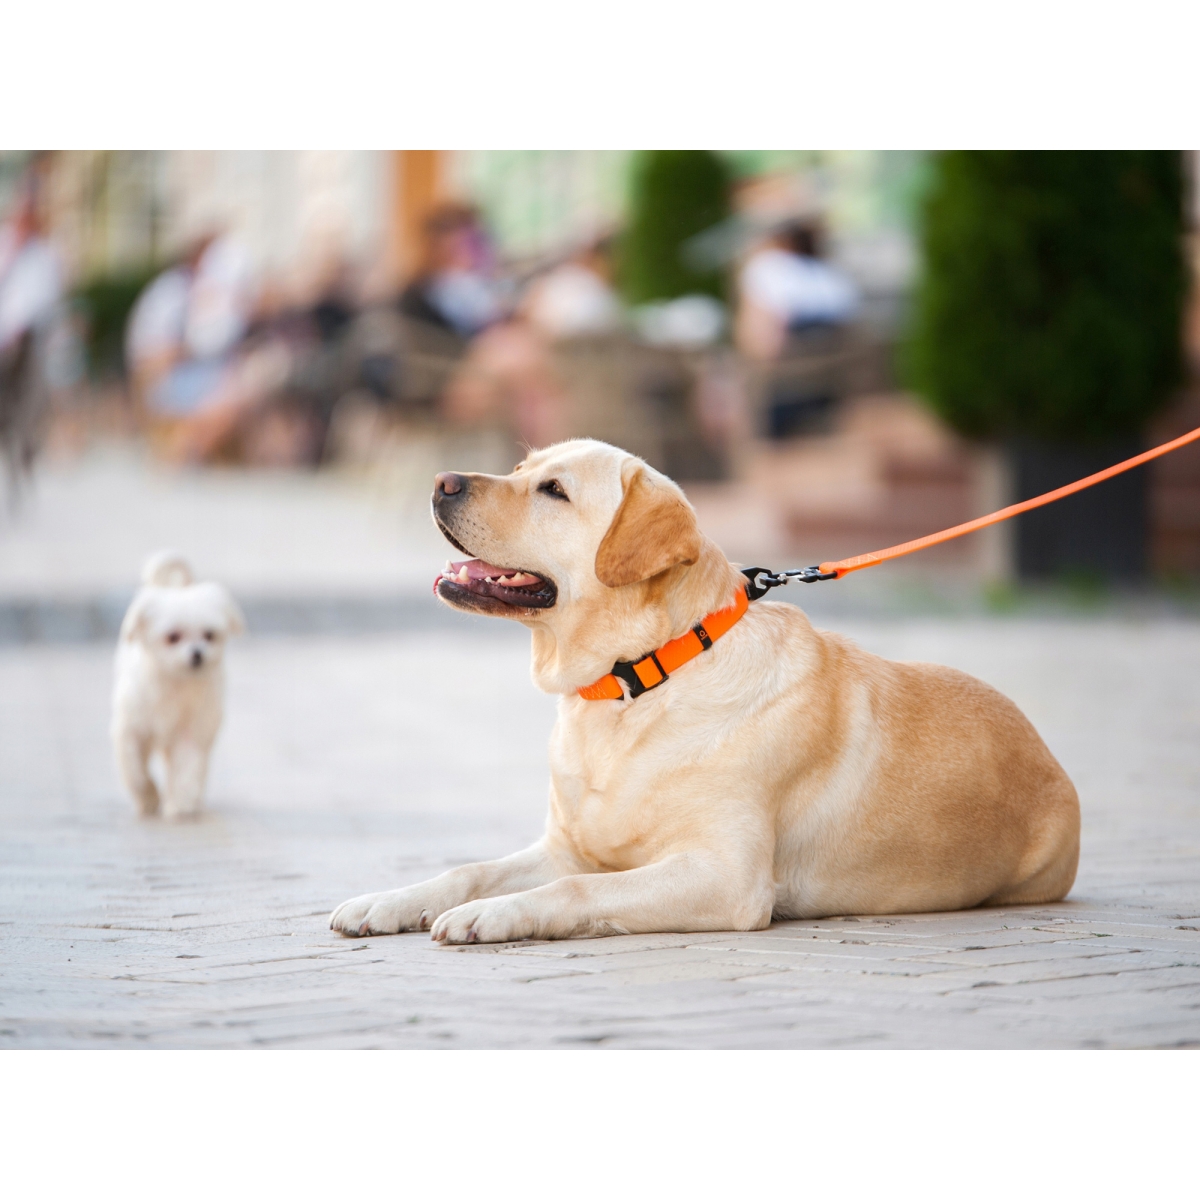 Smycz dla psów COLLAR EVOLUTOR szerokość 25 mm – NAJMOCNIEJSZA SMYCZ, pomarańczowa